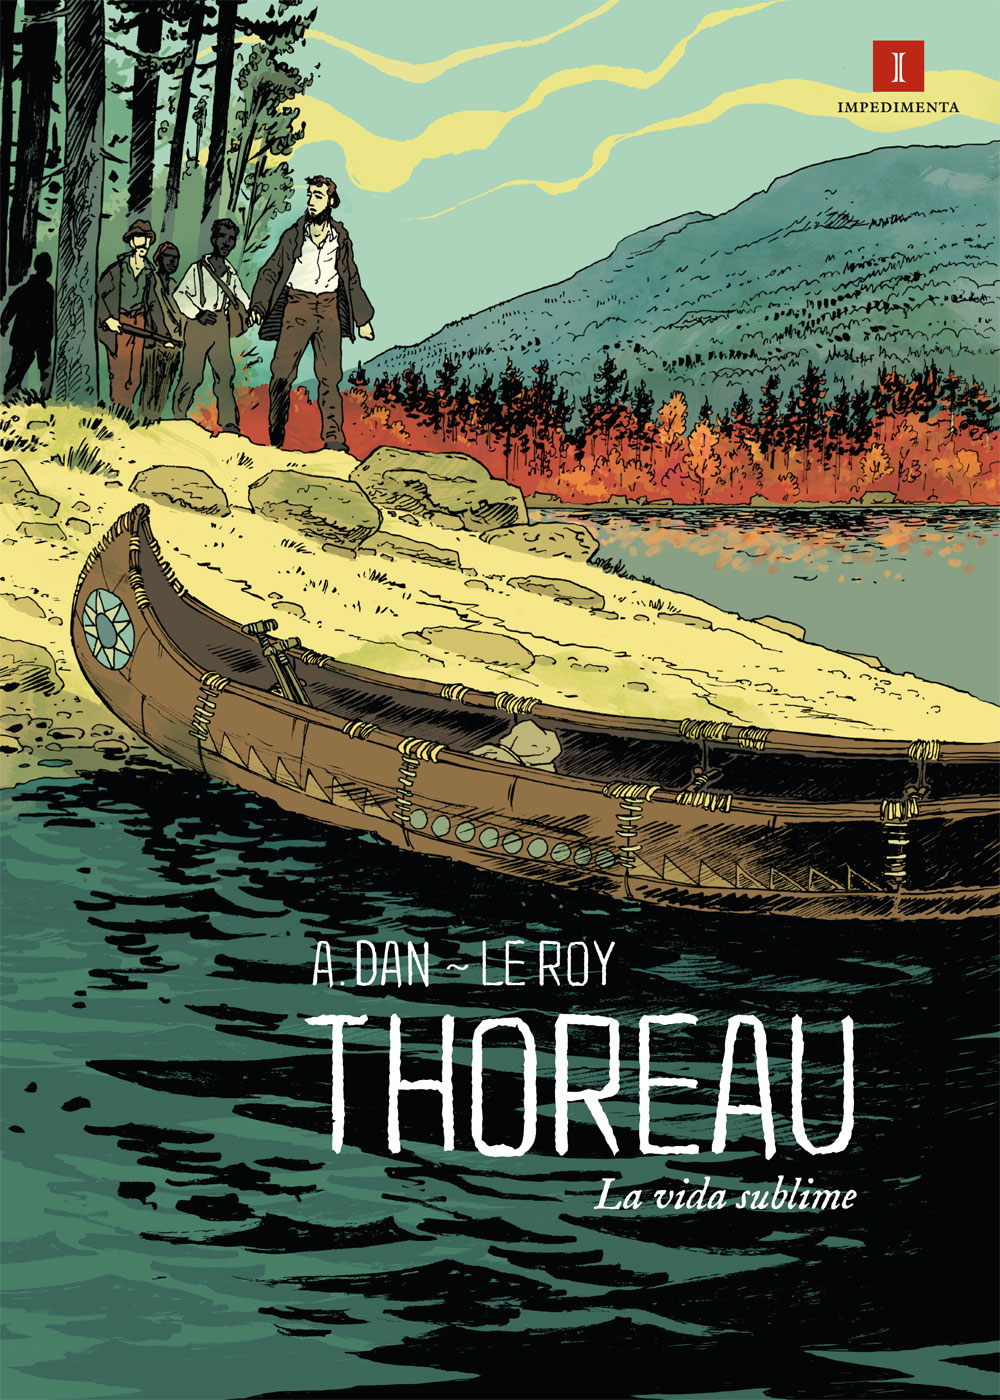 Thoreau,
                                                          la vida
                                                          sublime